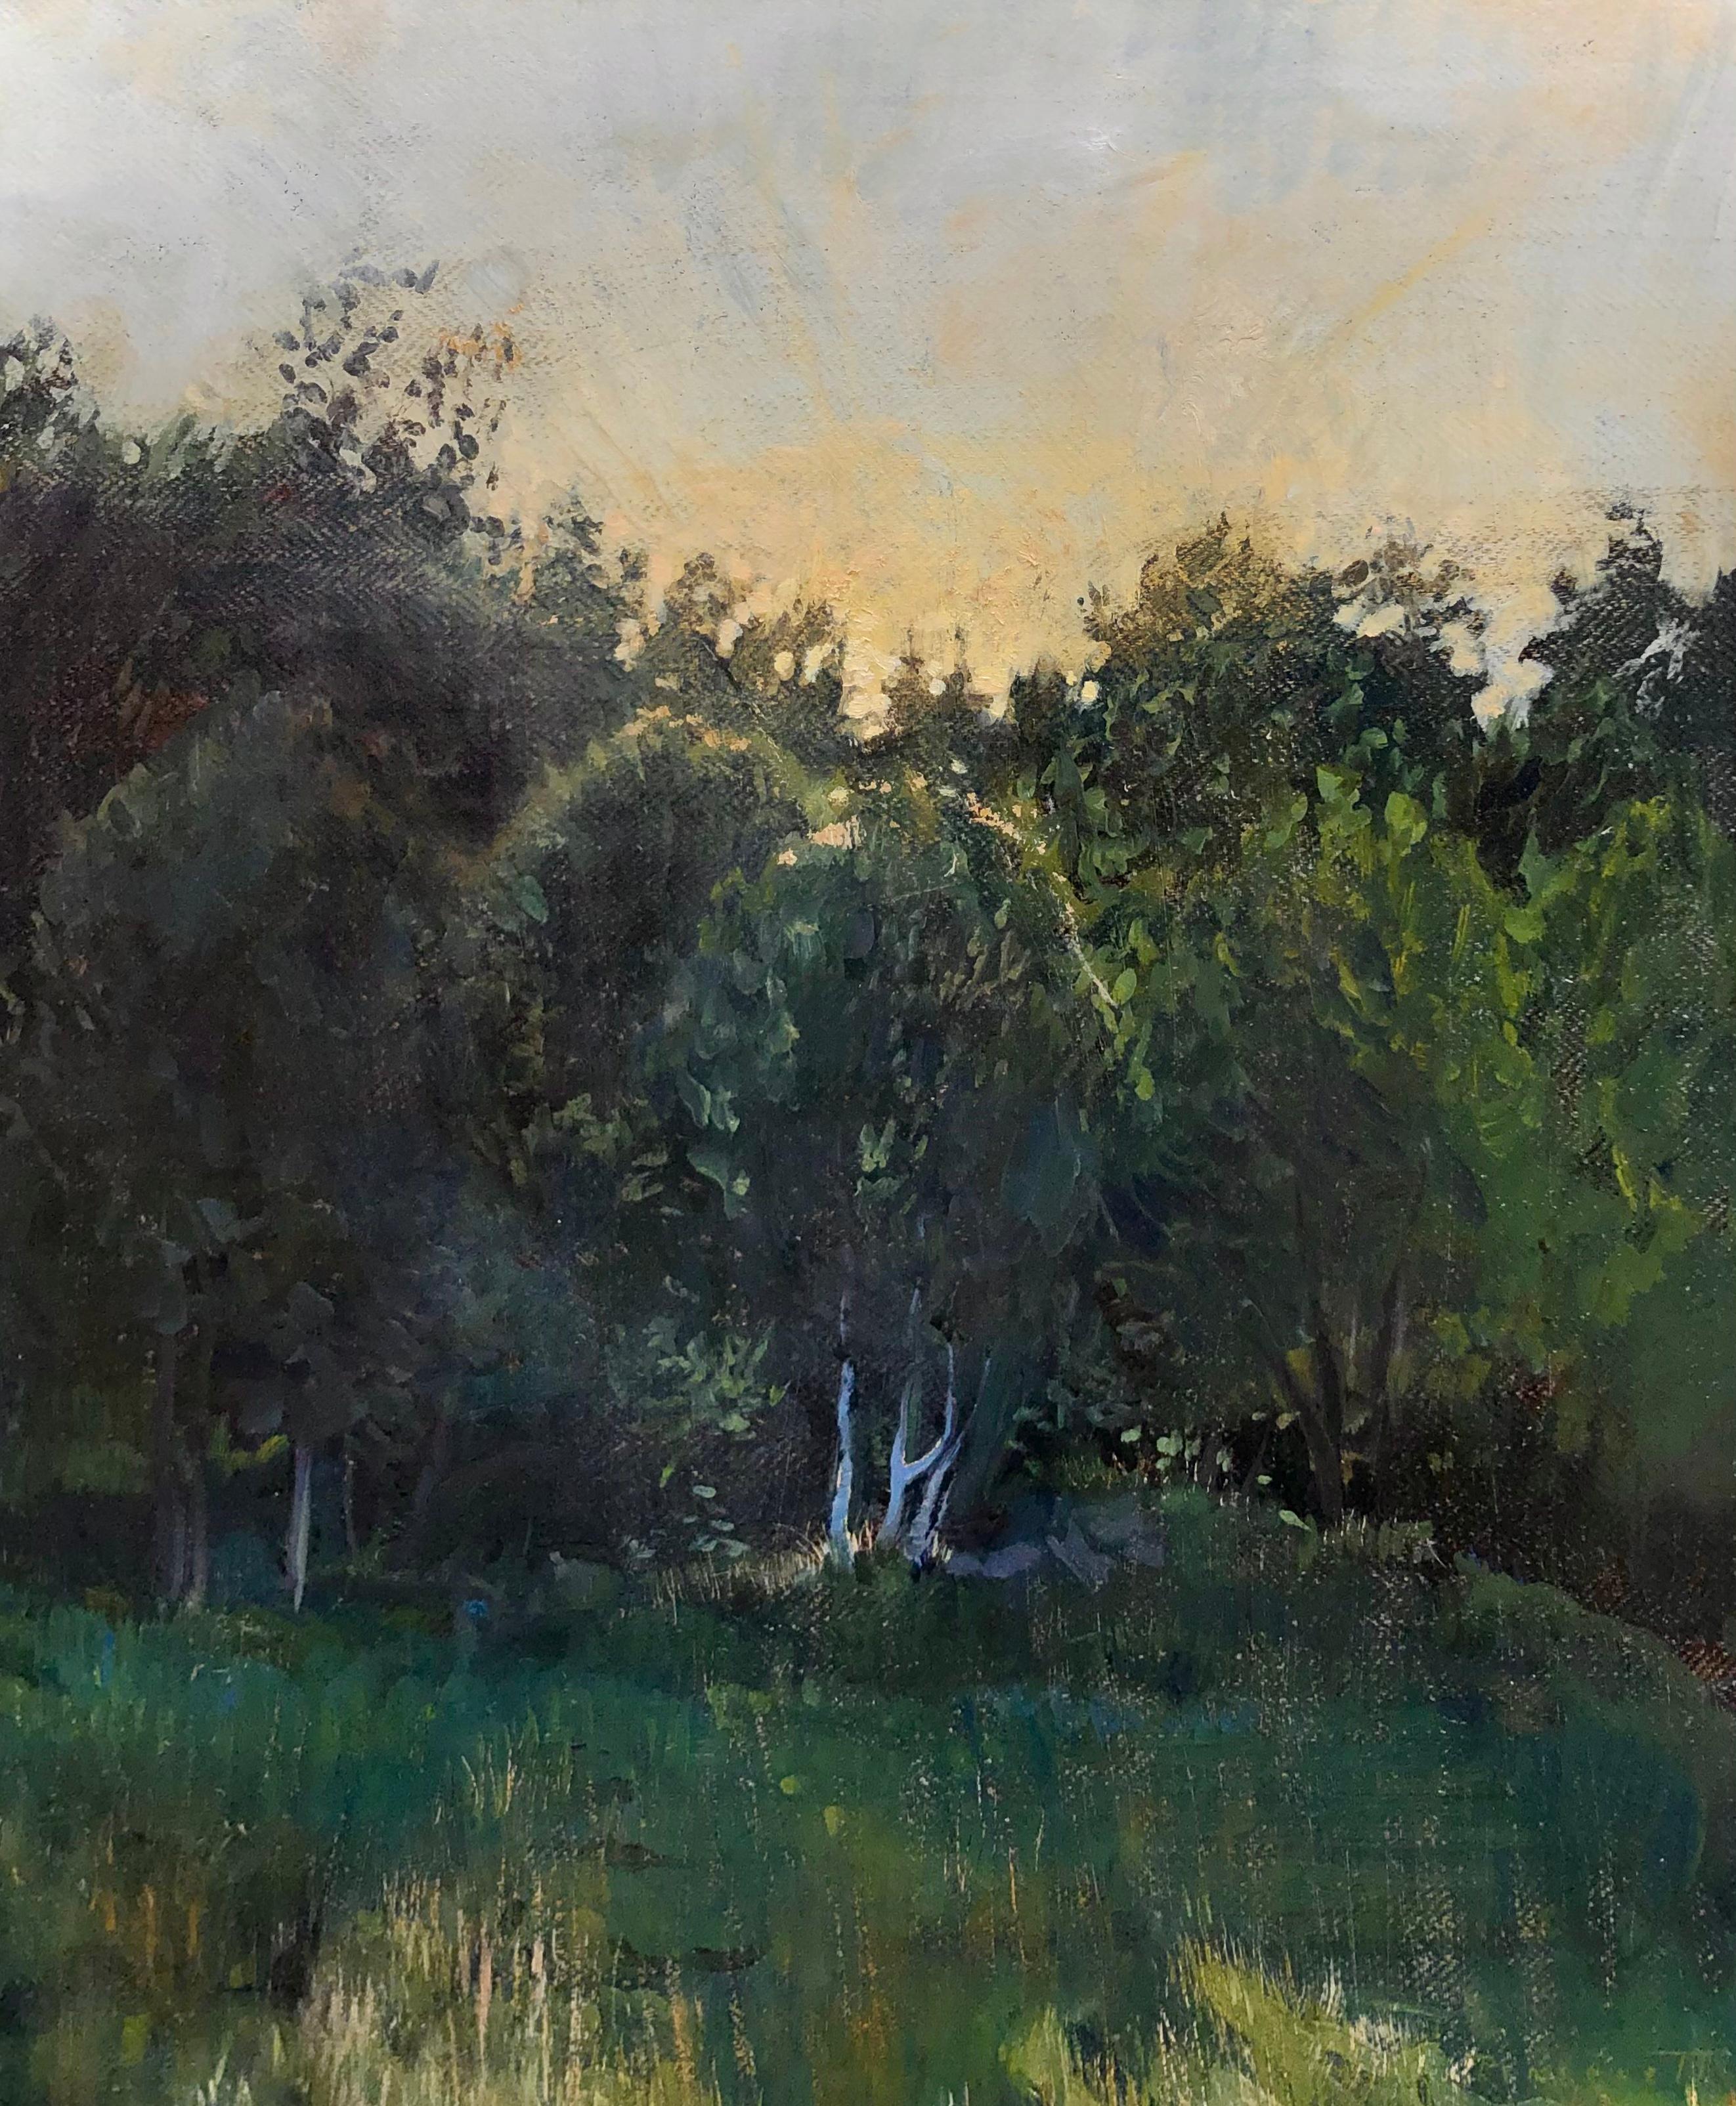 "Norwegischer Sonnenuntergang" zeitgenössisches tonalistisches Gemälde - Sonnenuntergang hinter grünen Bäumen